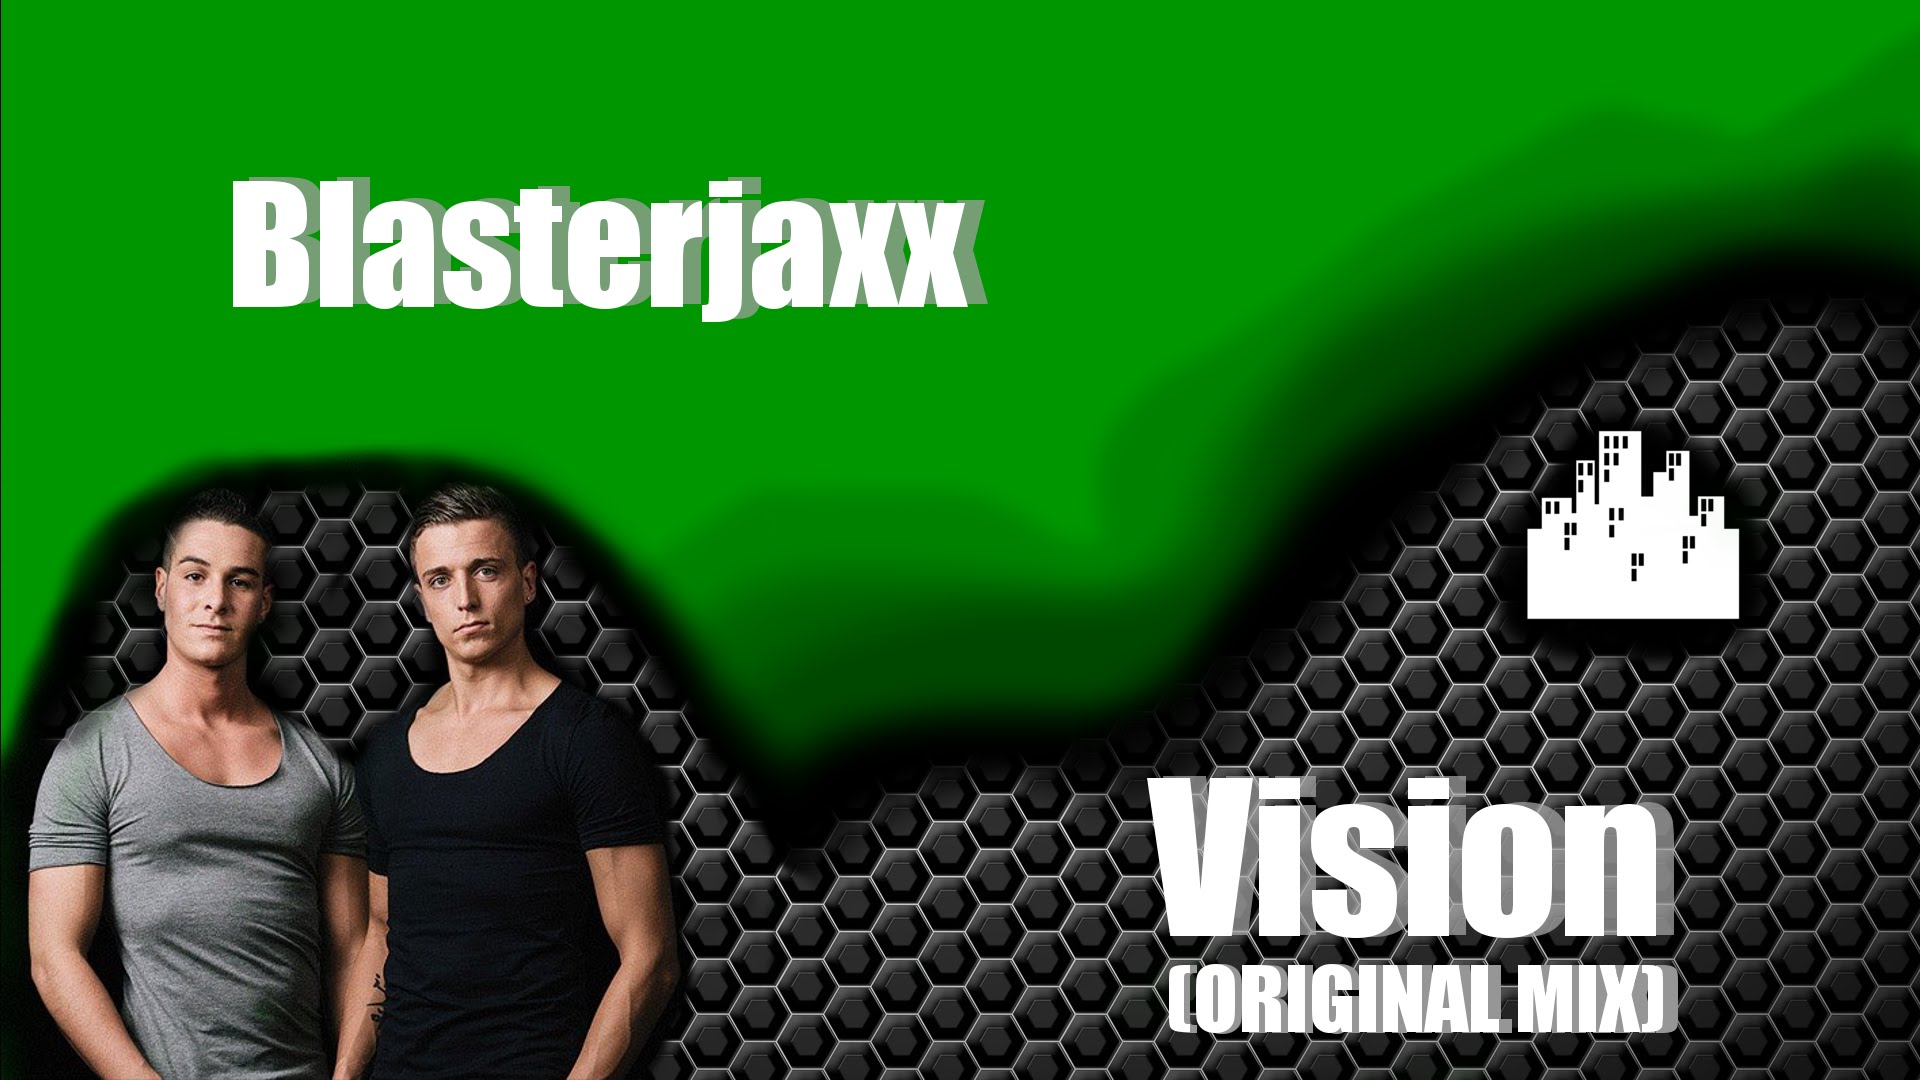 Blasterjaxx Vision Original Mix